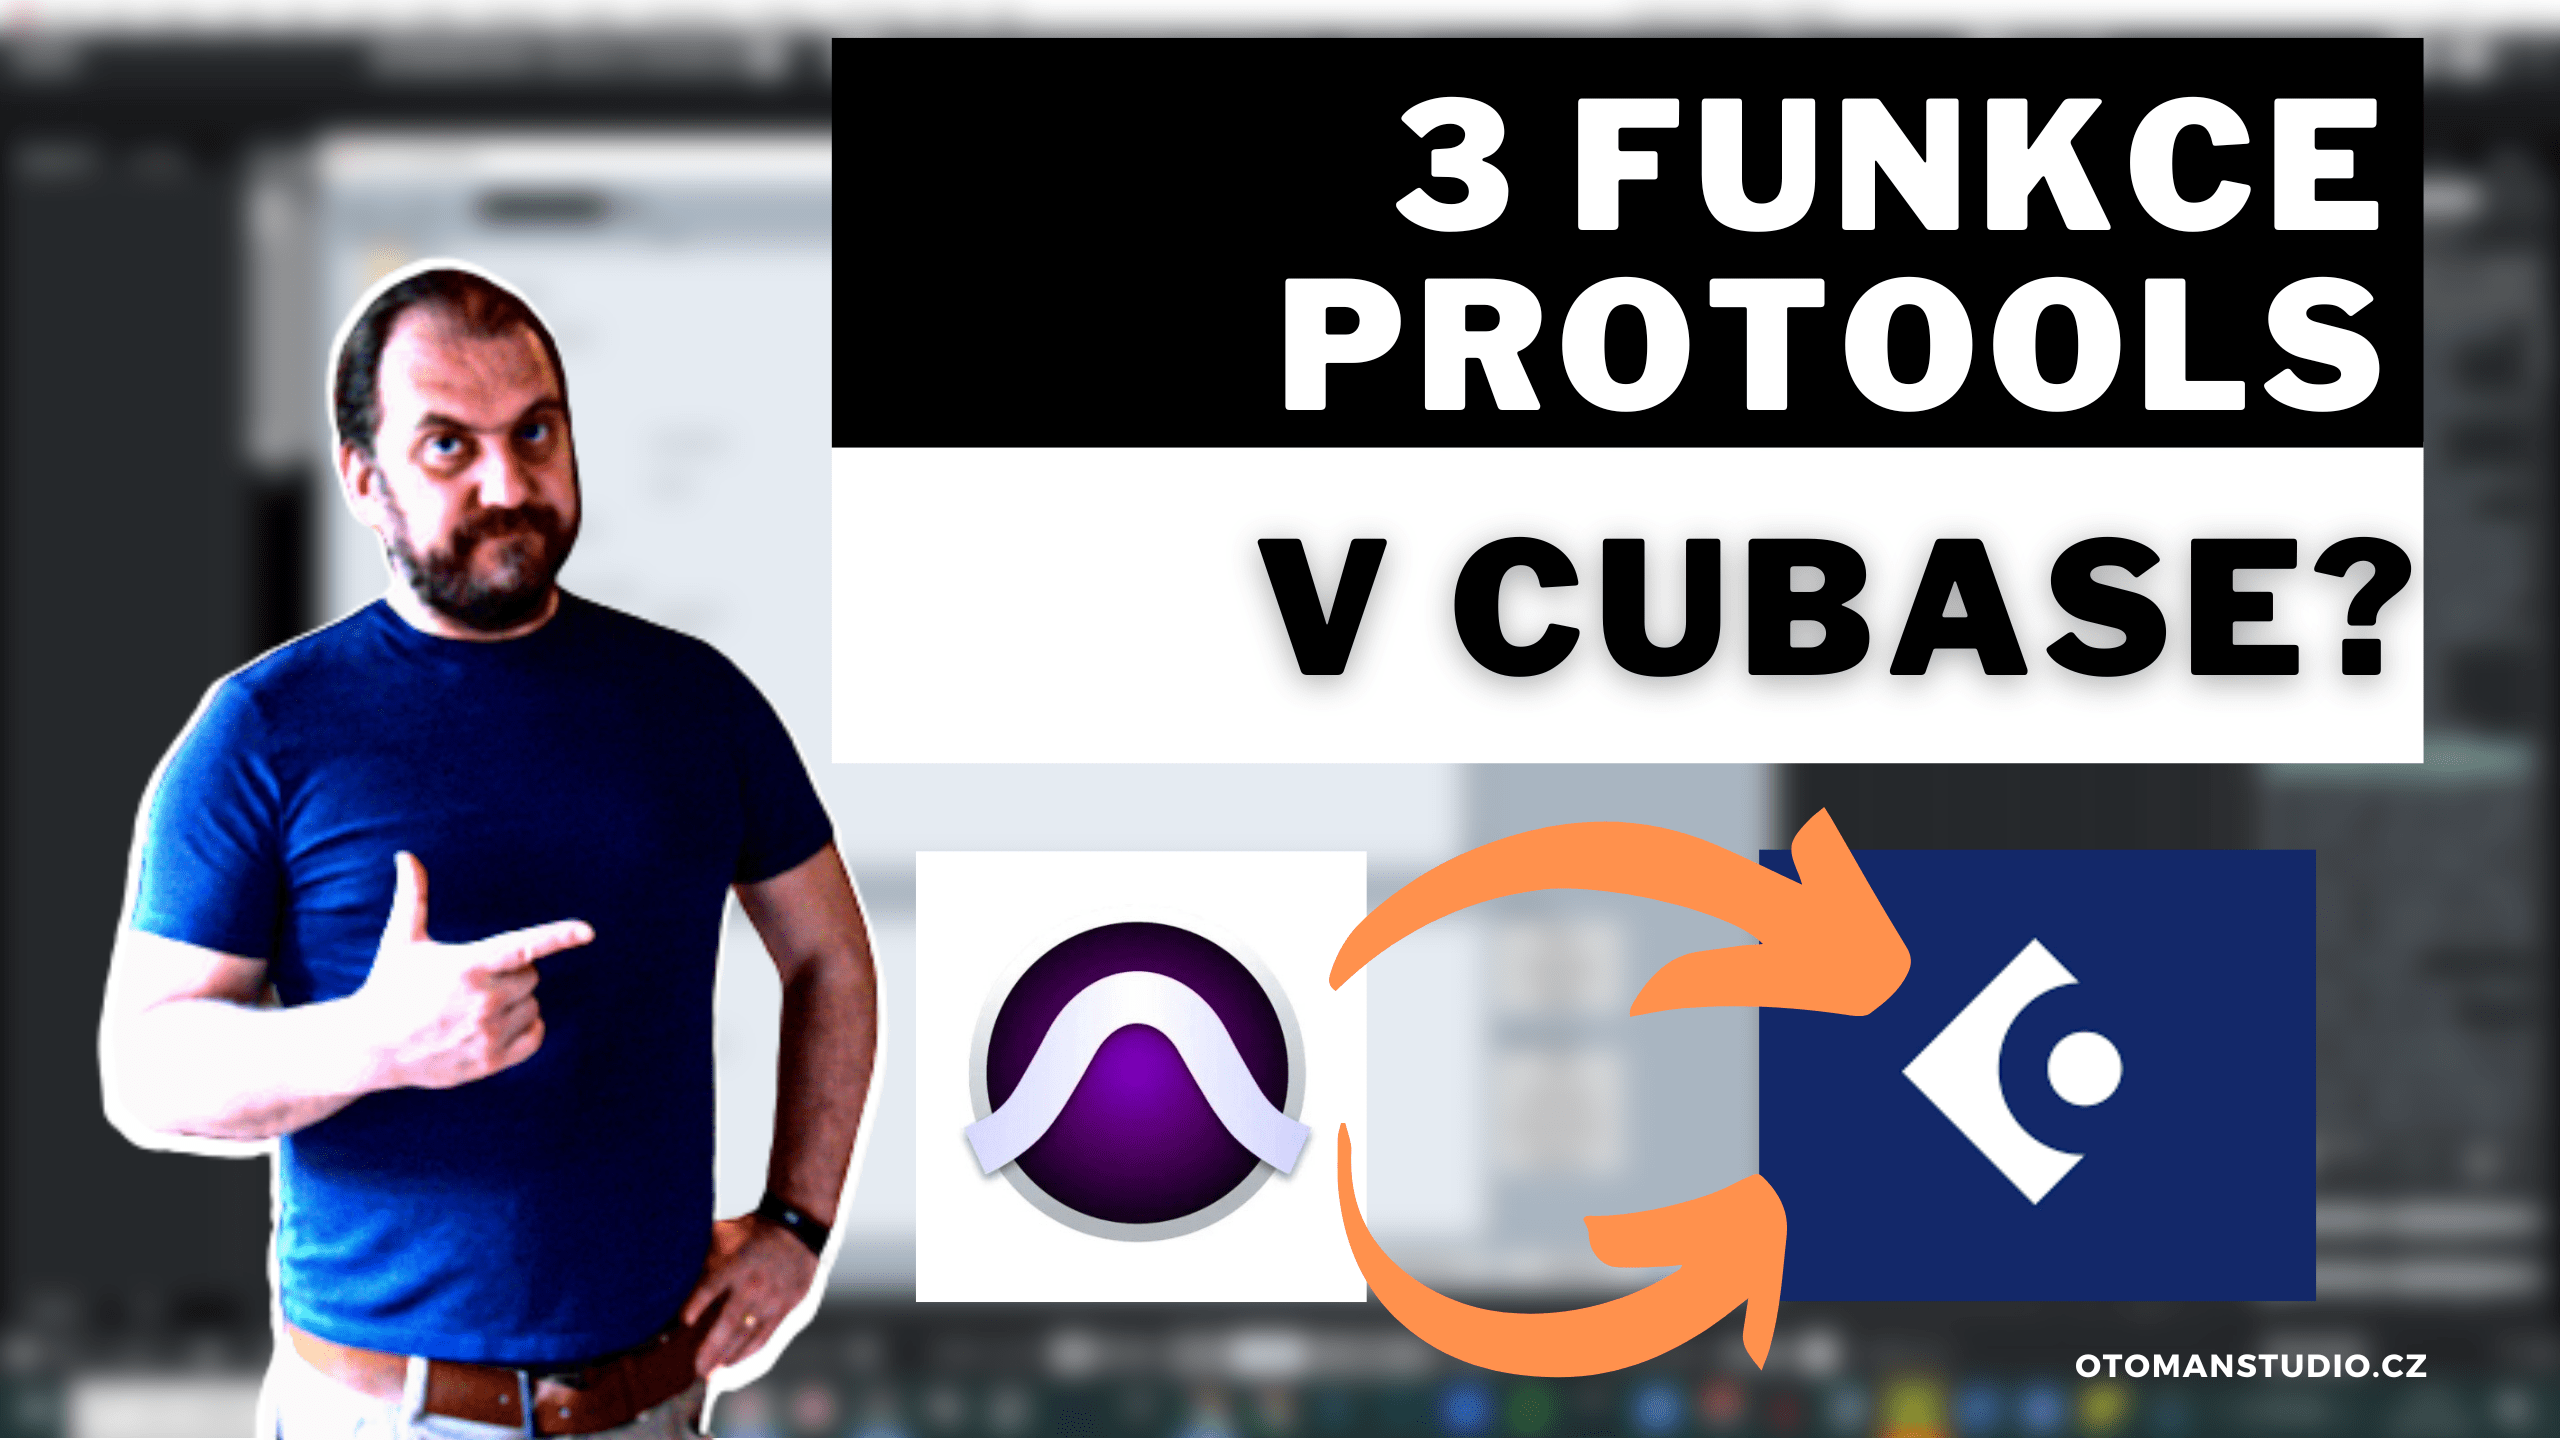 3 funkce ProTools (které bych chtěl) v Cubase?